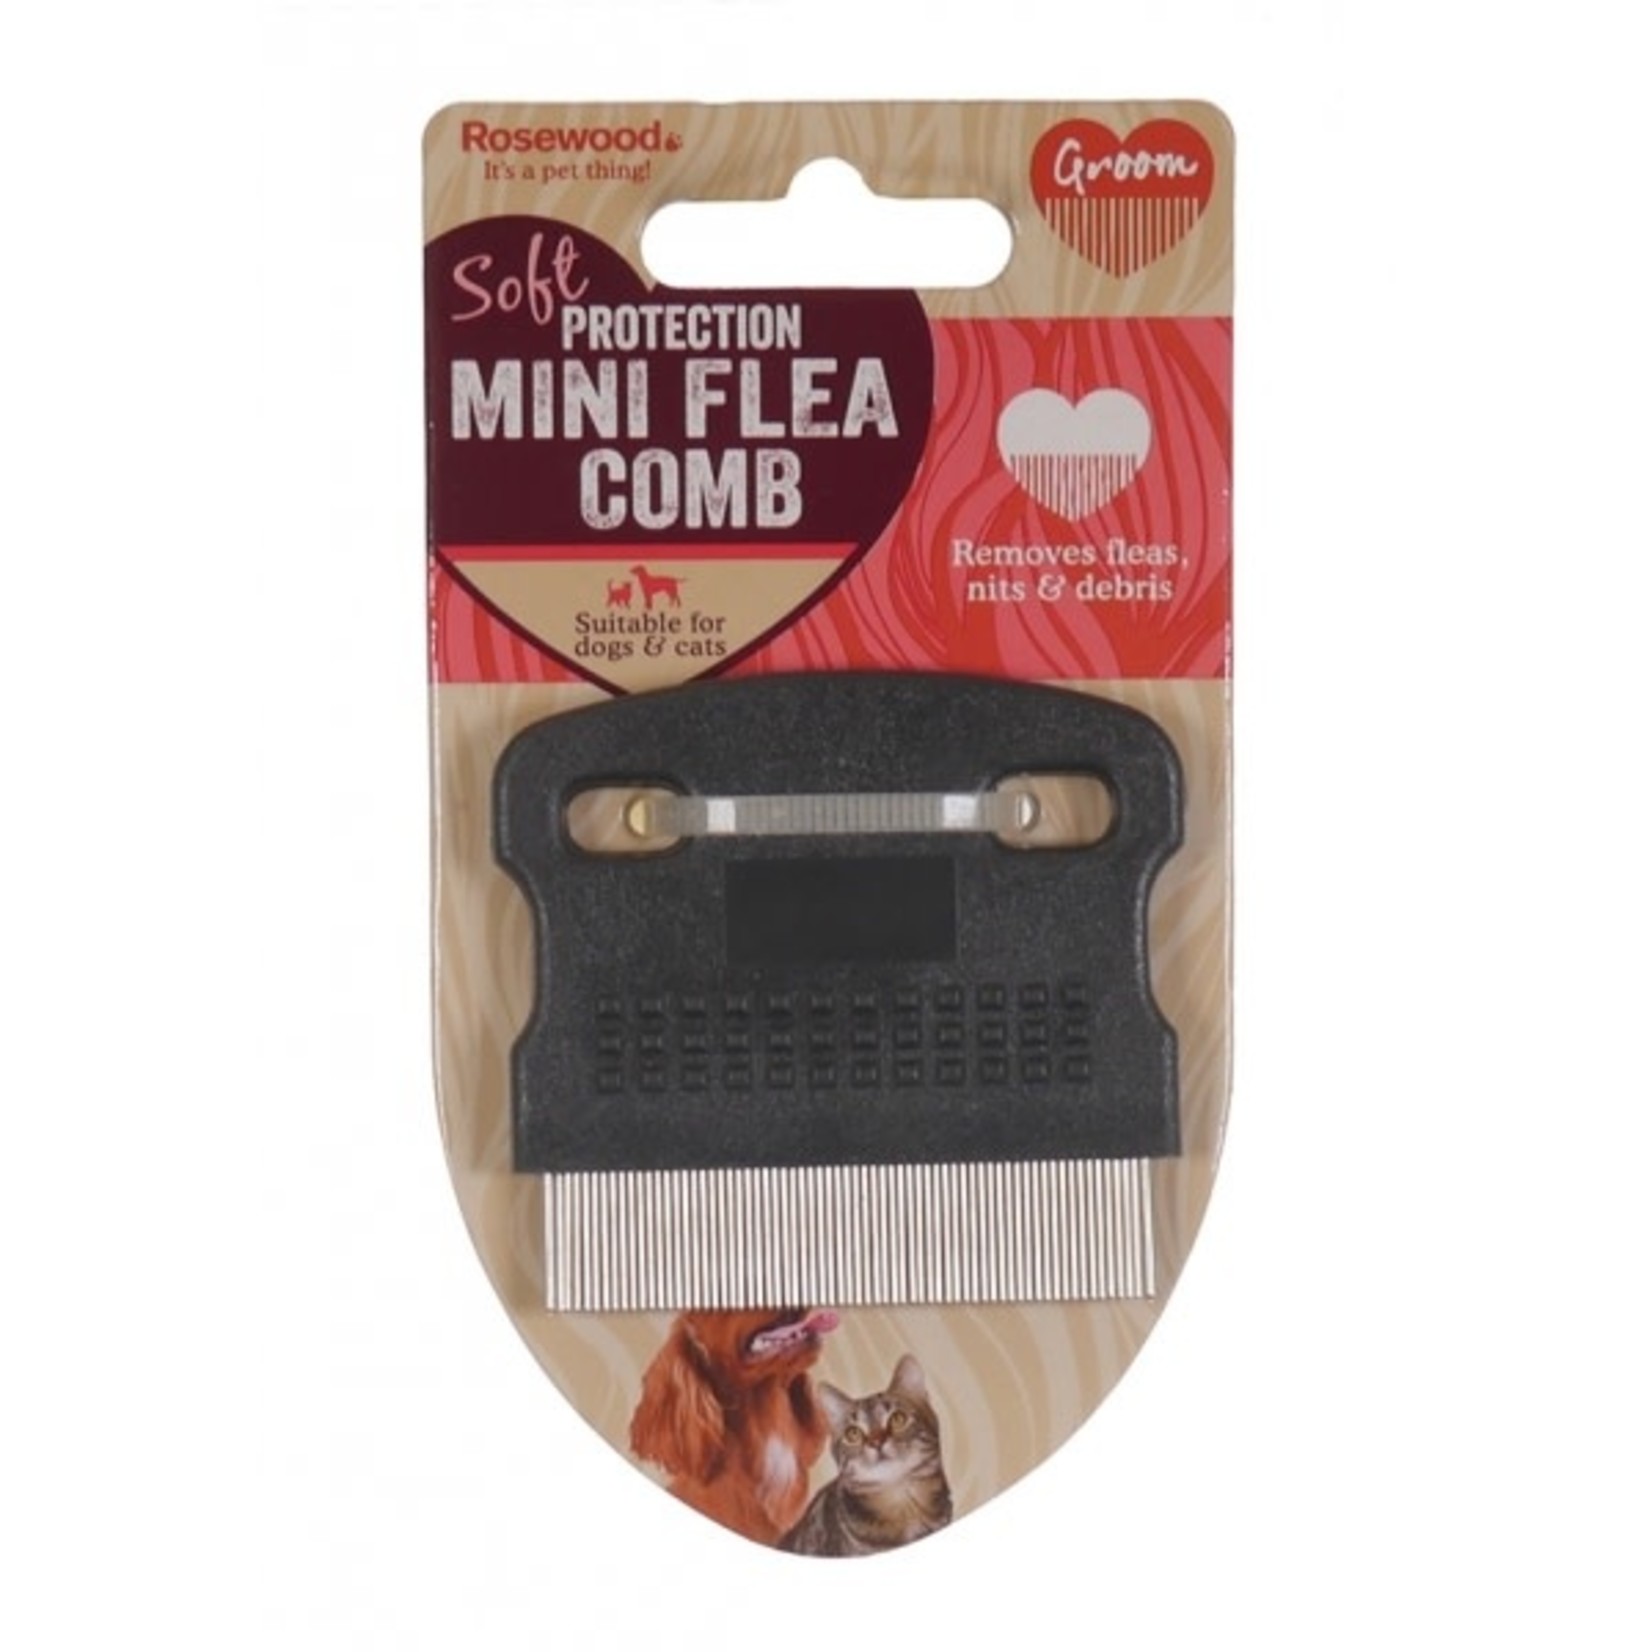 Rosewood Mini Flea Comb